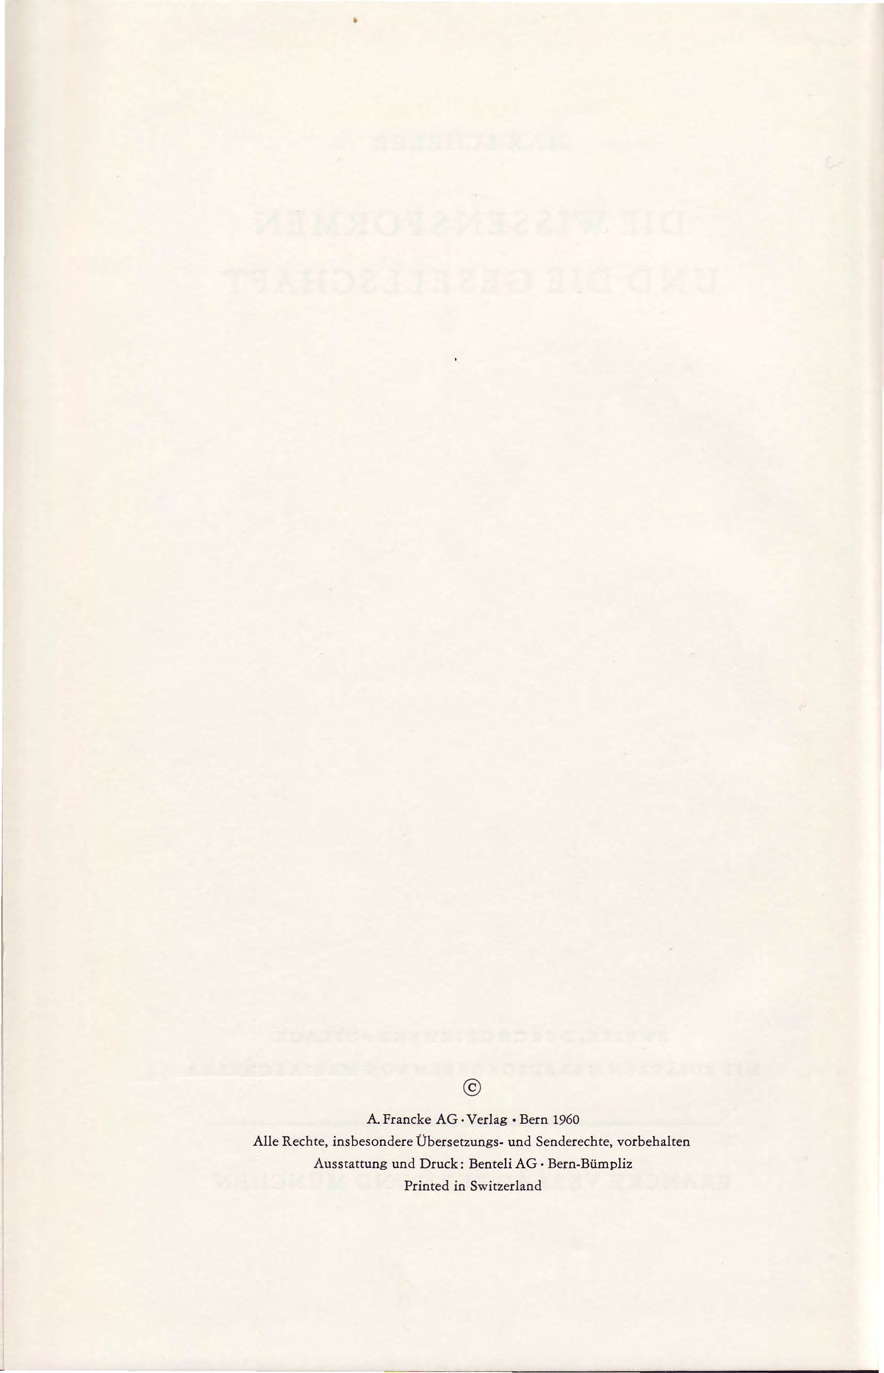 A. Francke AG Verlag Bern 1960 Alle Rechte, insbesondere Übersetzungs- und